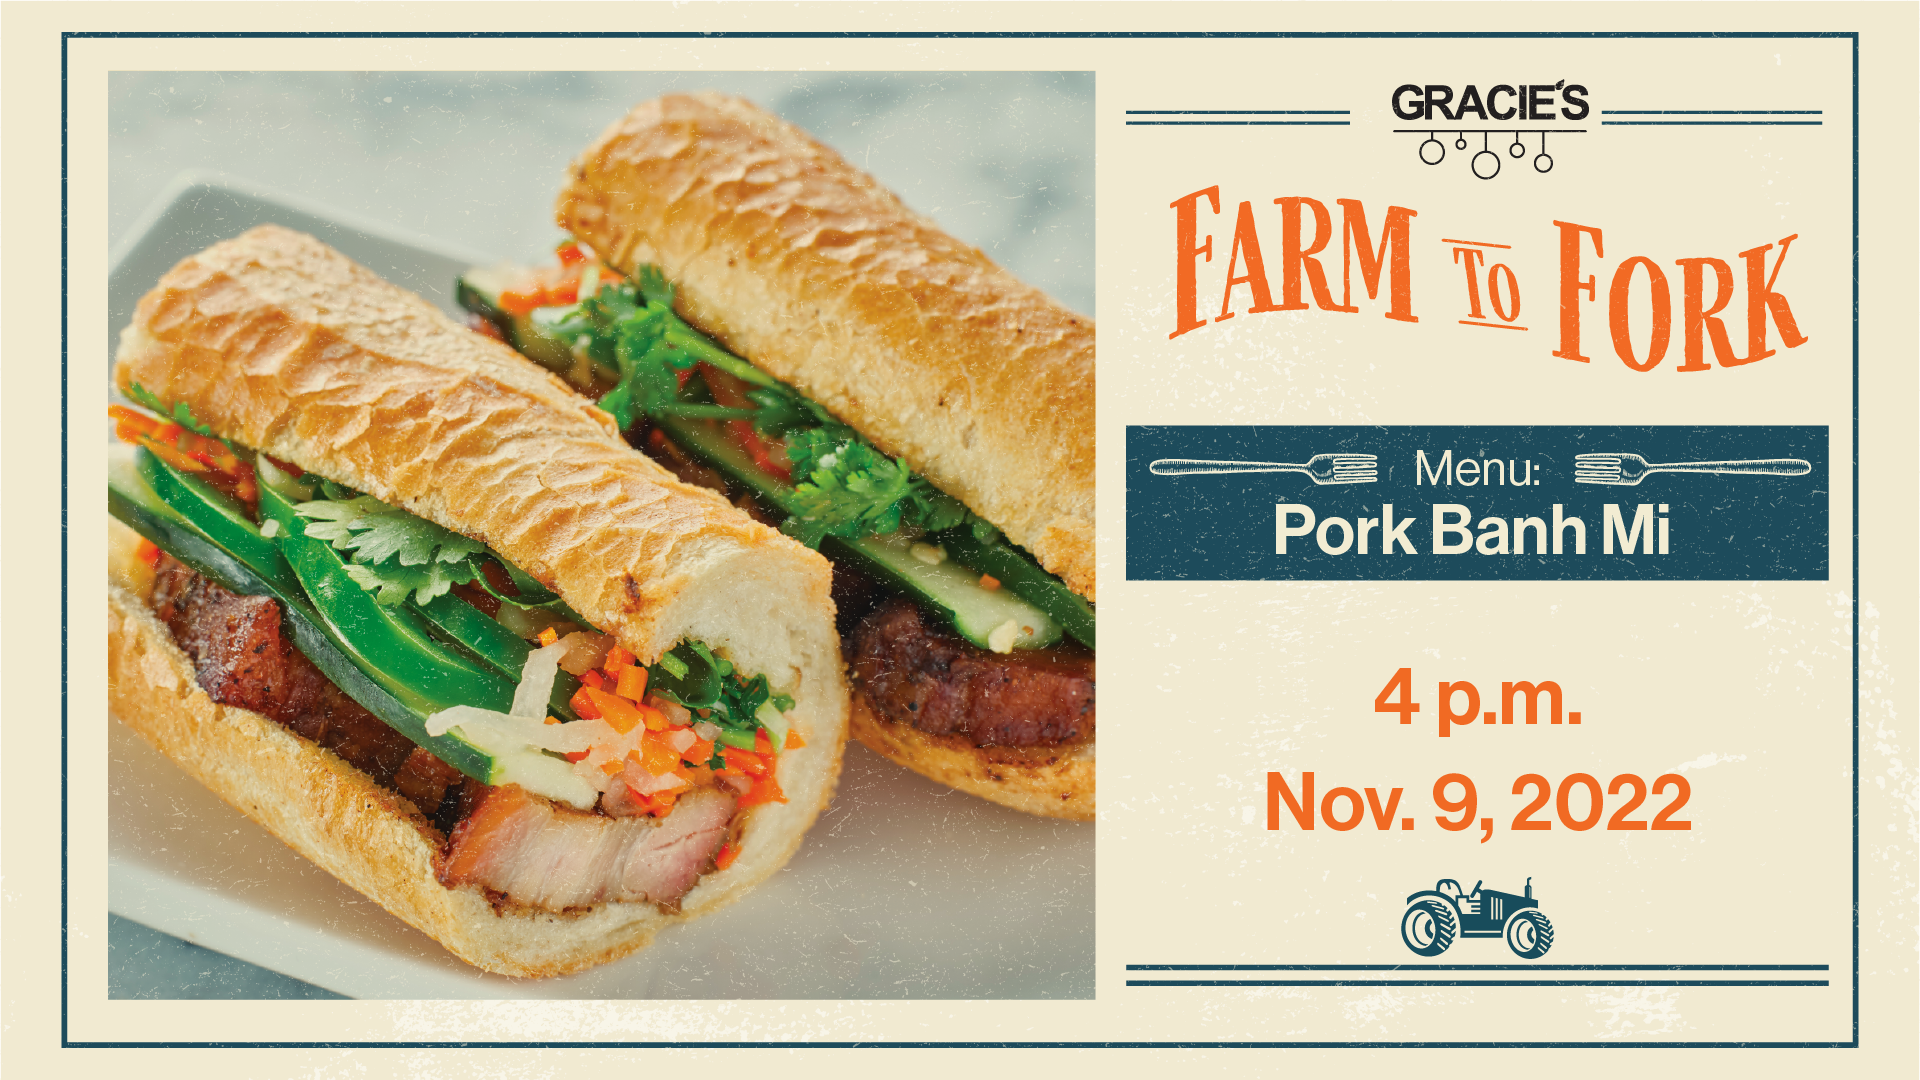 Farm to Fork at Gracie's, Nov. 9 at 4 p.m. 